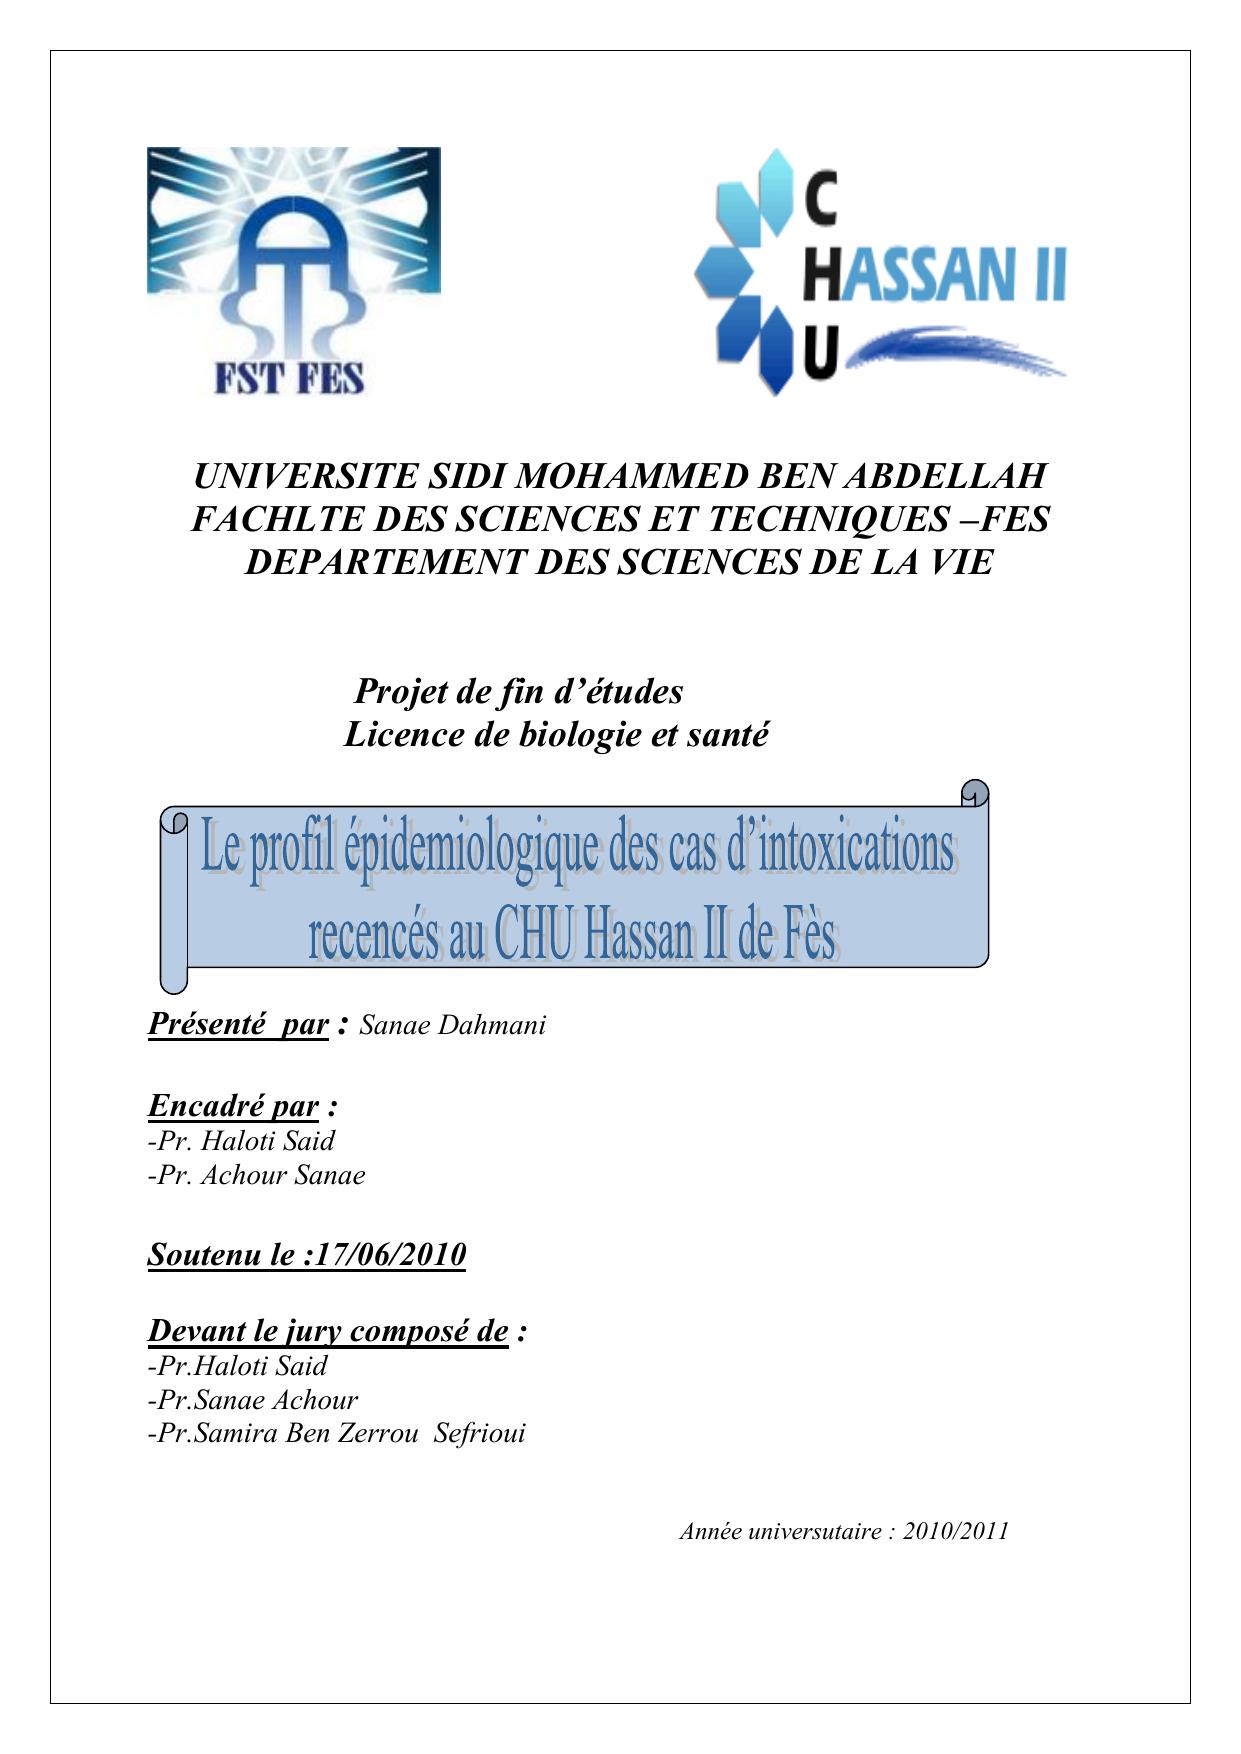 Le profil epidemologique des cas d'intoxications recencés au CHU Hassan II de Fès